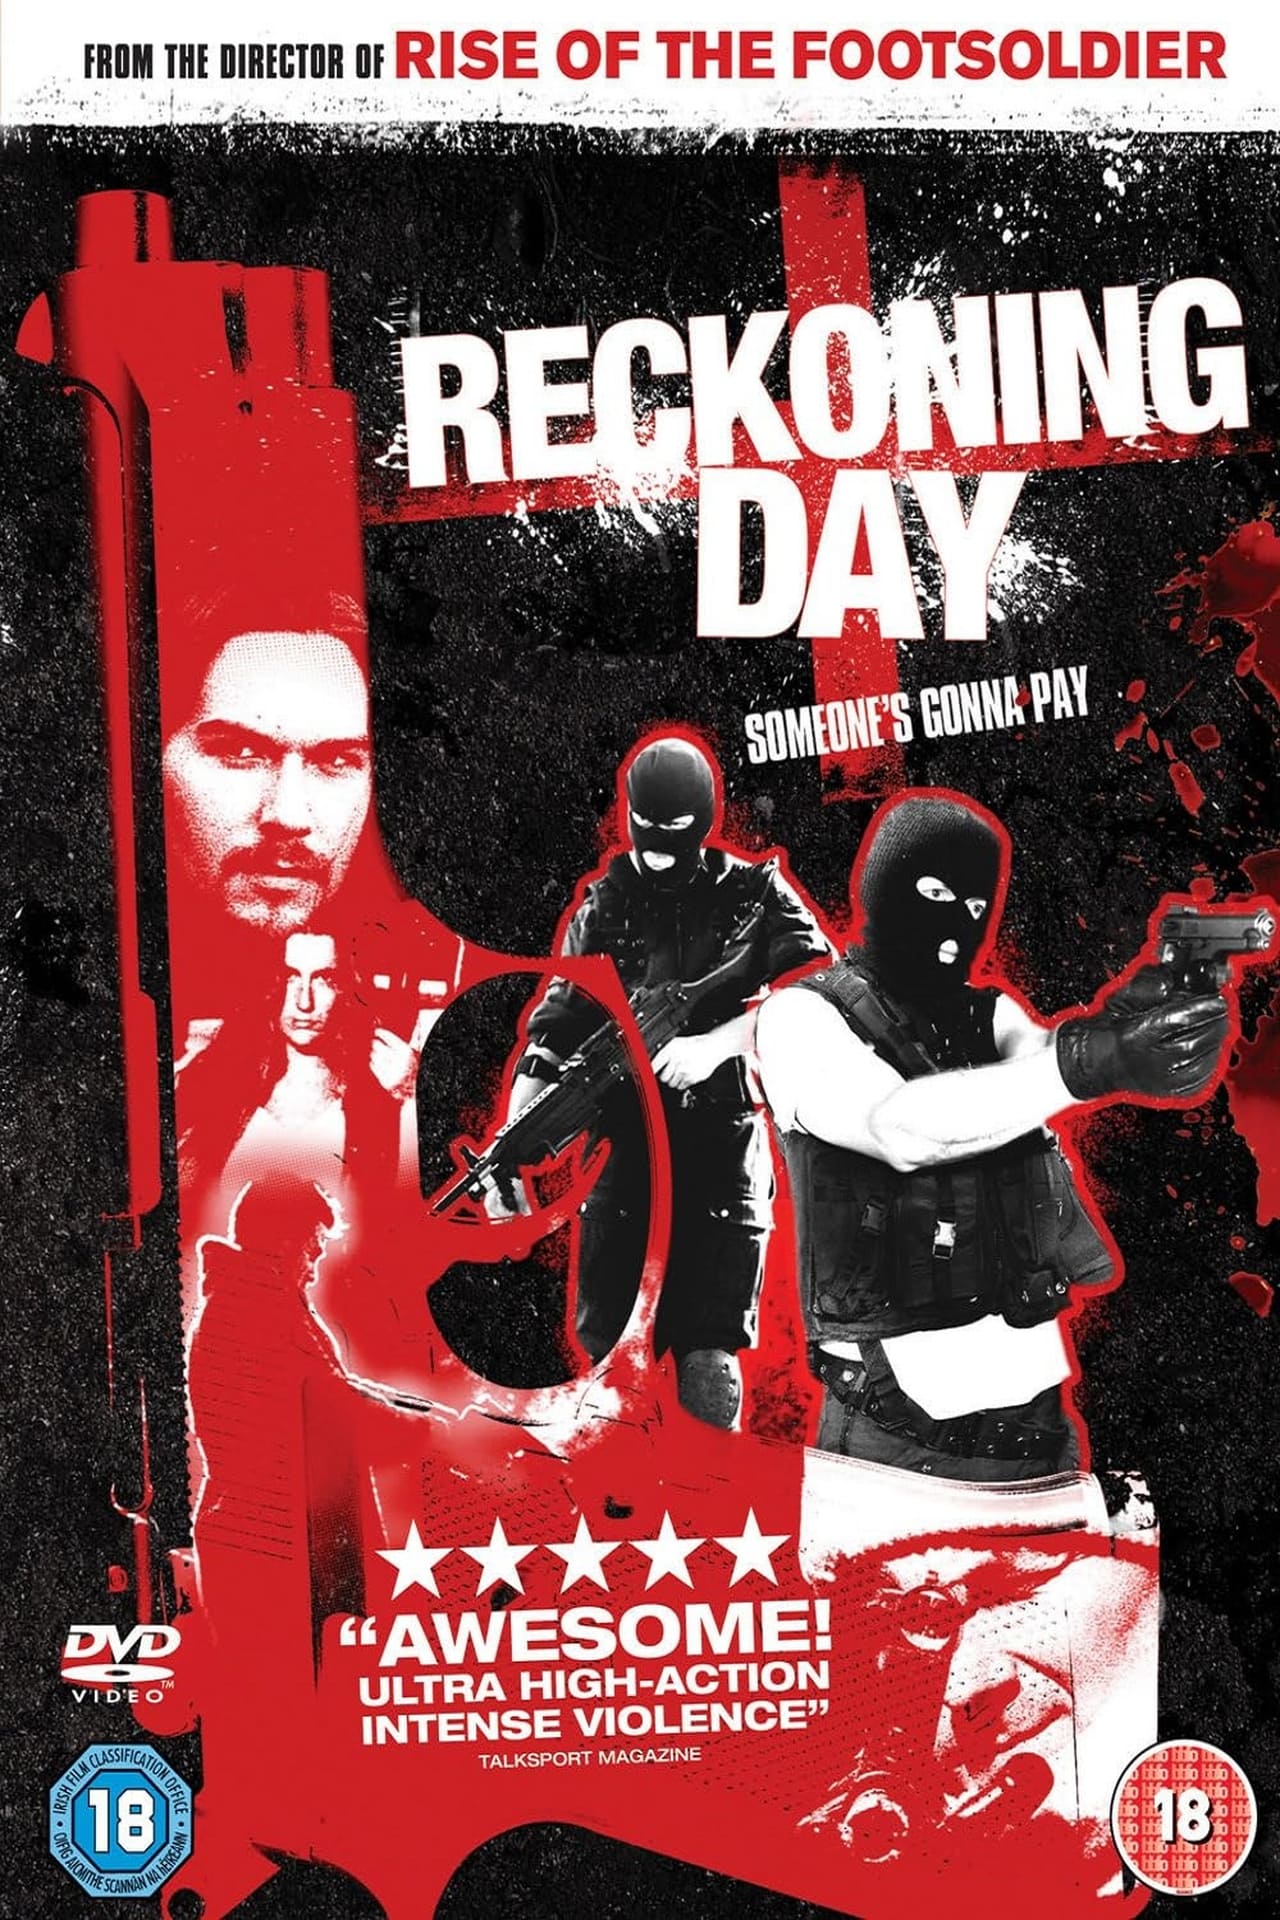 Reckoning Day (2002)